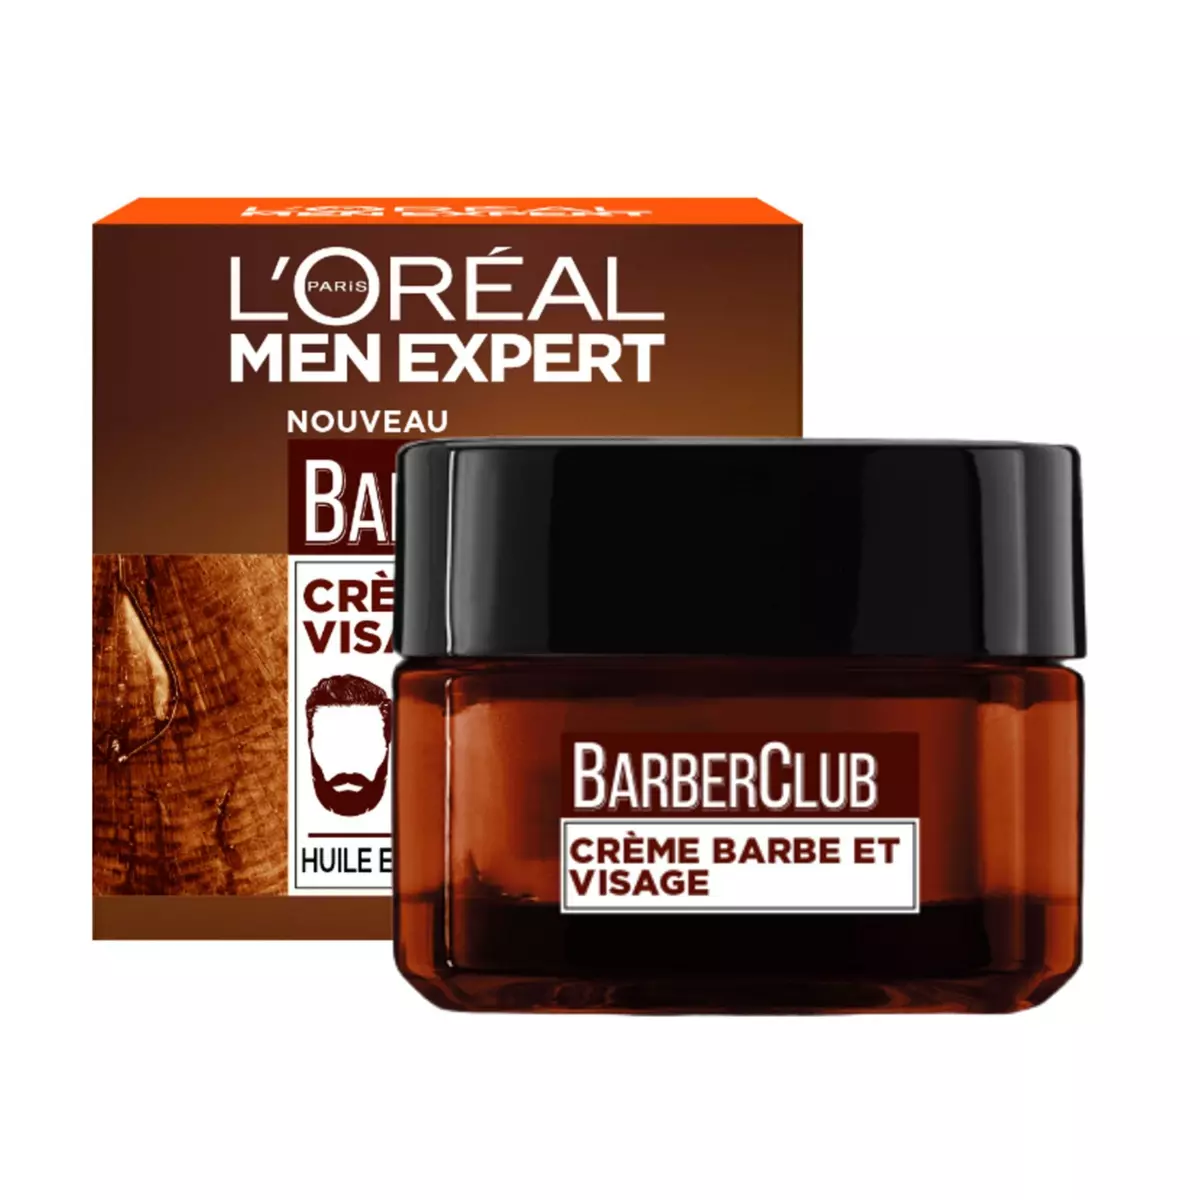 L'OREAL Barber Club Crème pour barbe et visage 50ml